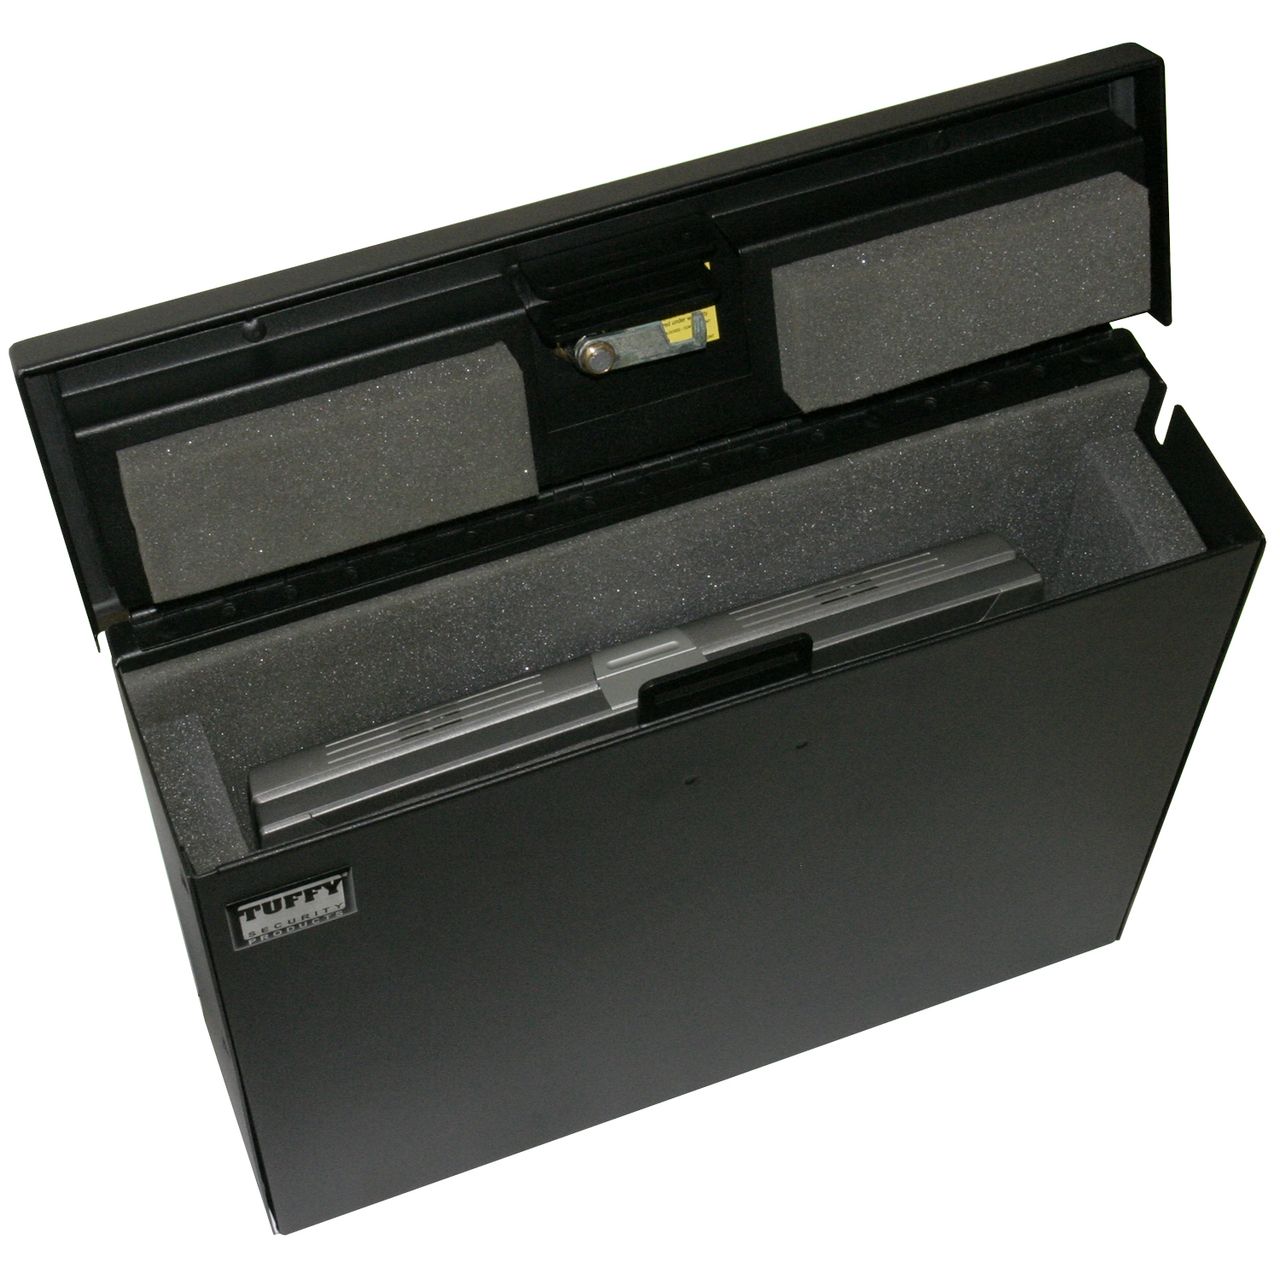 NOVISauto Laptop und Tabletsafe für Fahrzeuge 15 Zoll Fahrzeugsafe mattschwarz fest oder variabel eingebaut